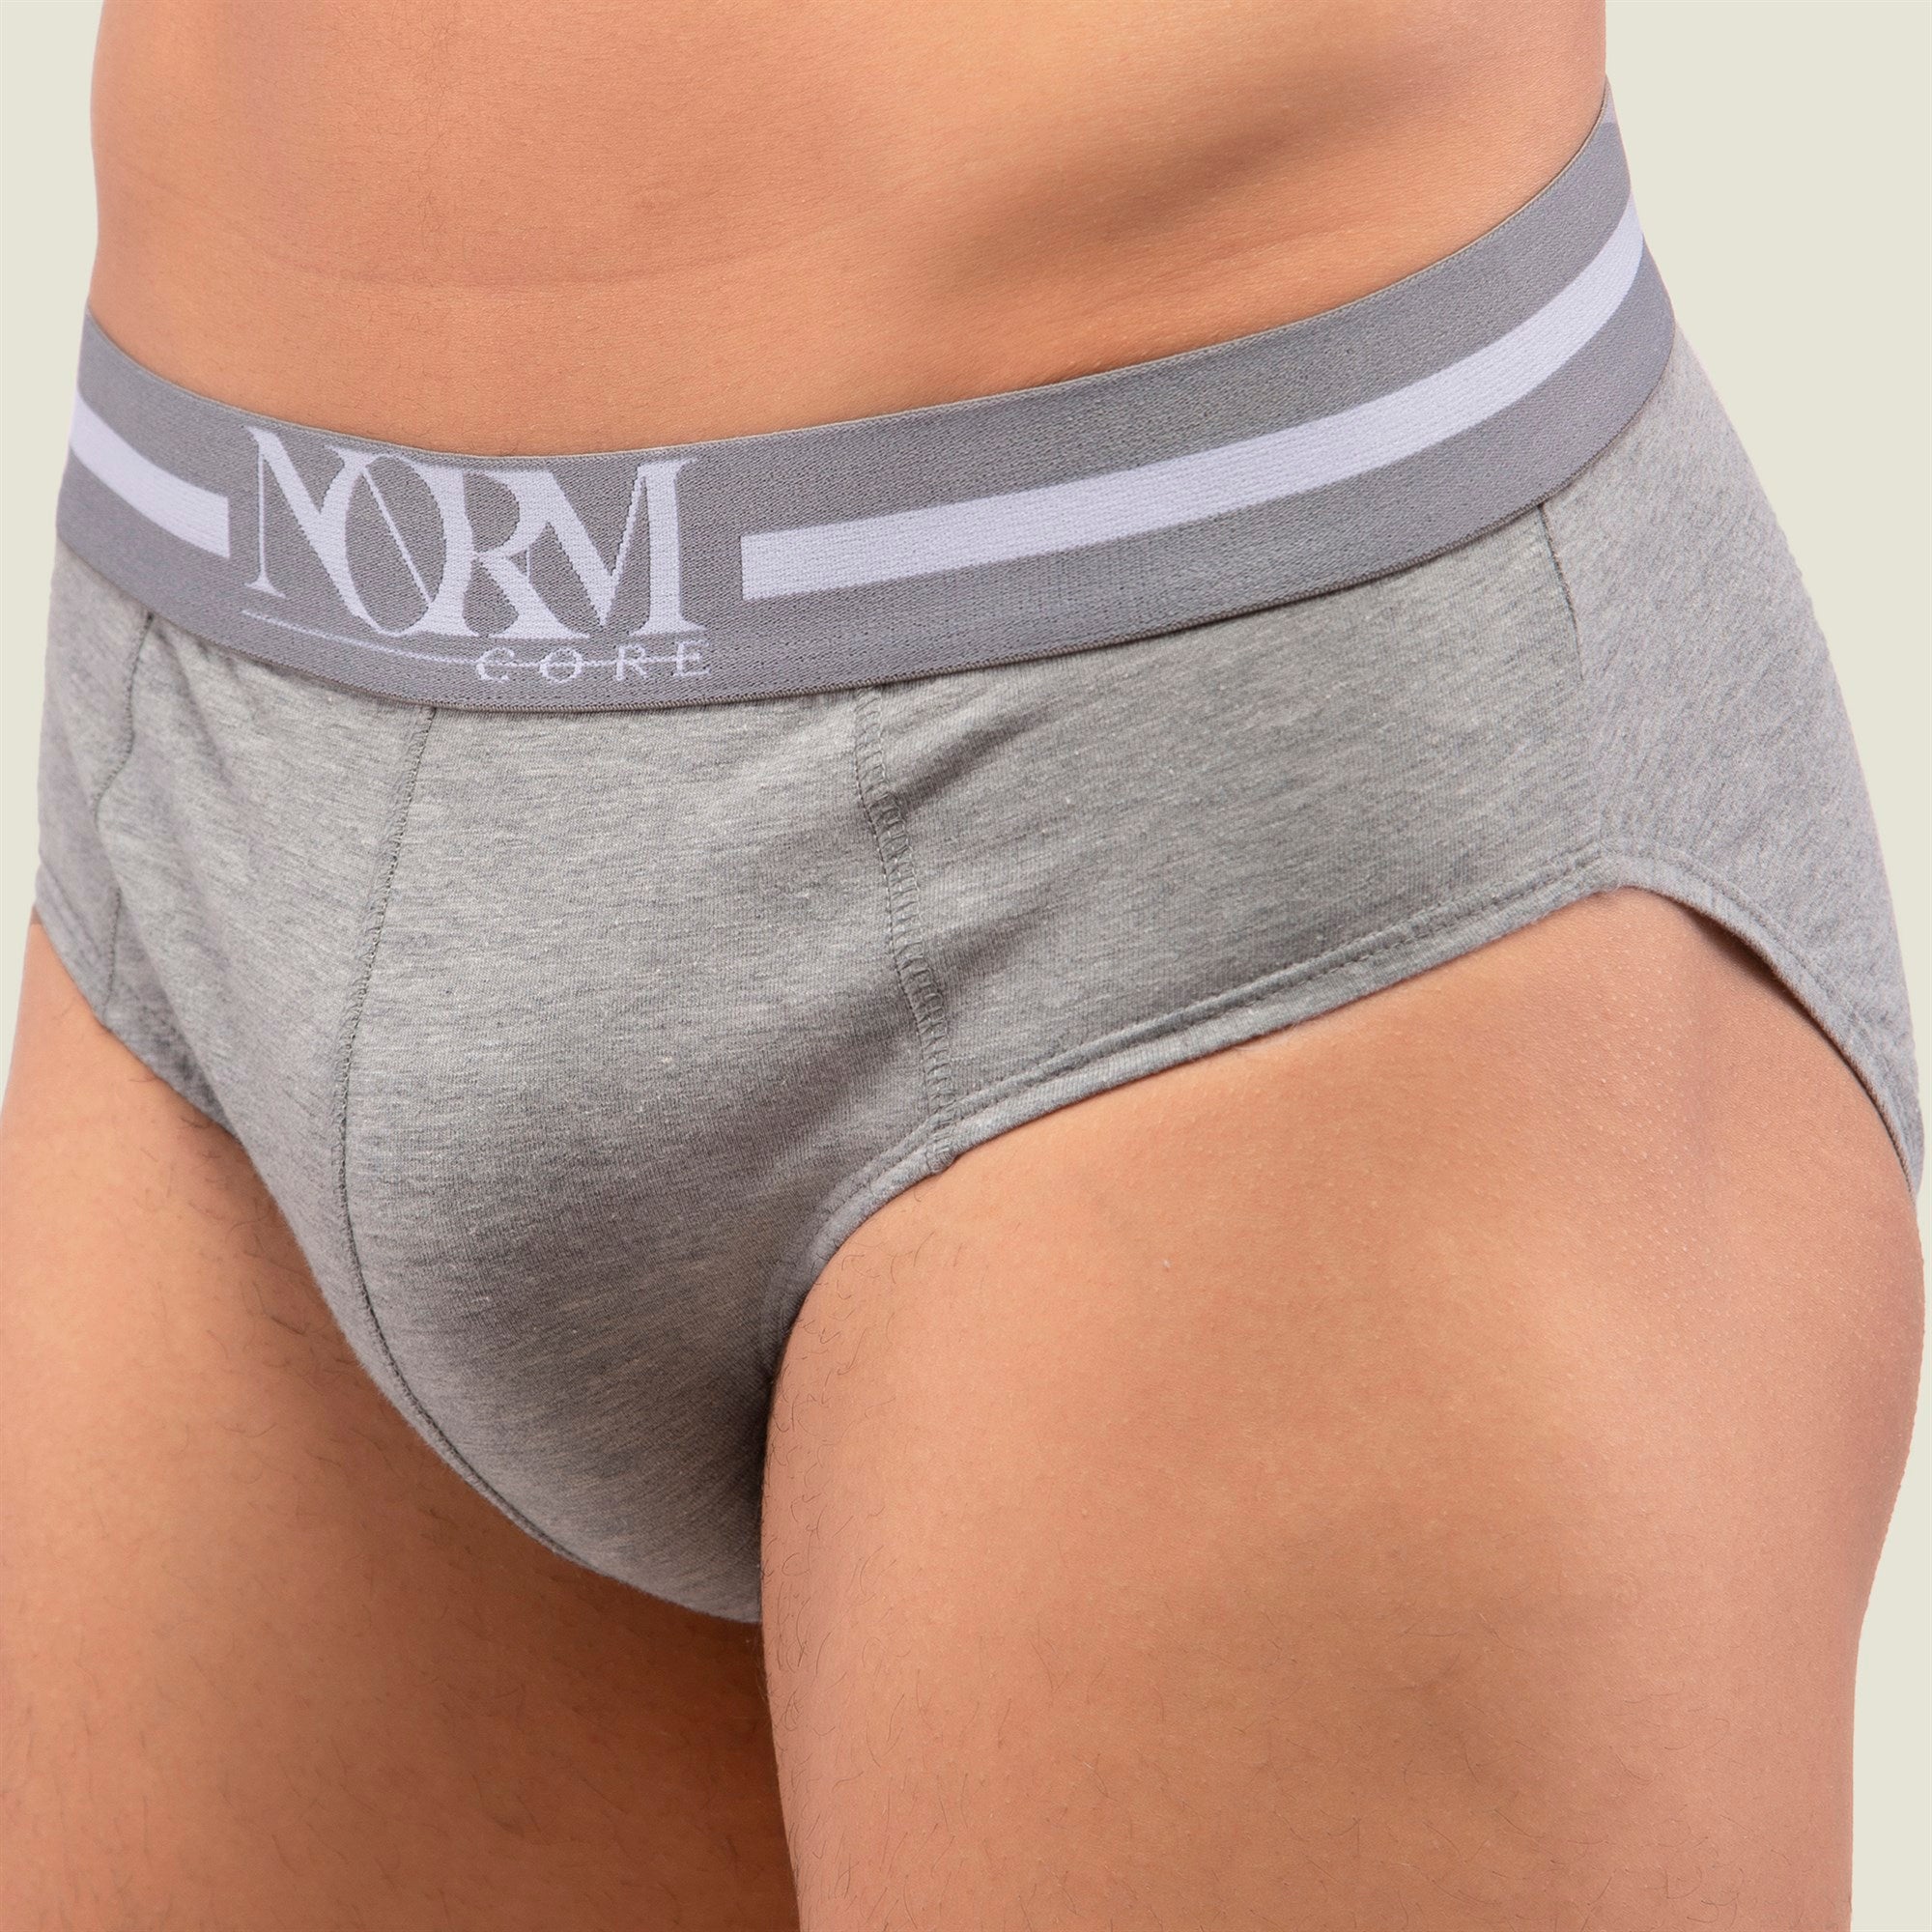 Normcore Cotton Innerwear - Grey Brief with Grey Waistband Underwear